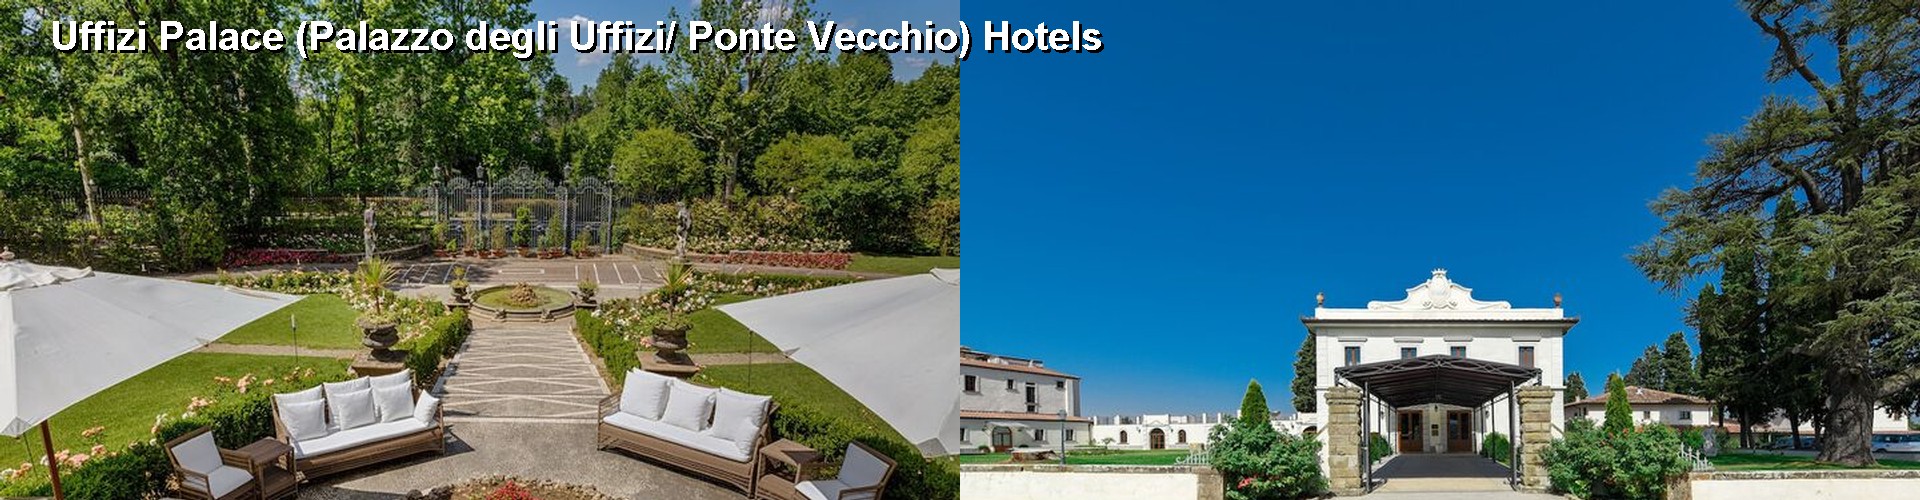 5 Best Hotels near Uffizi Palace (Palazzo degli Uffizi/ Ponte Vecchio)